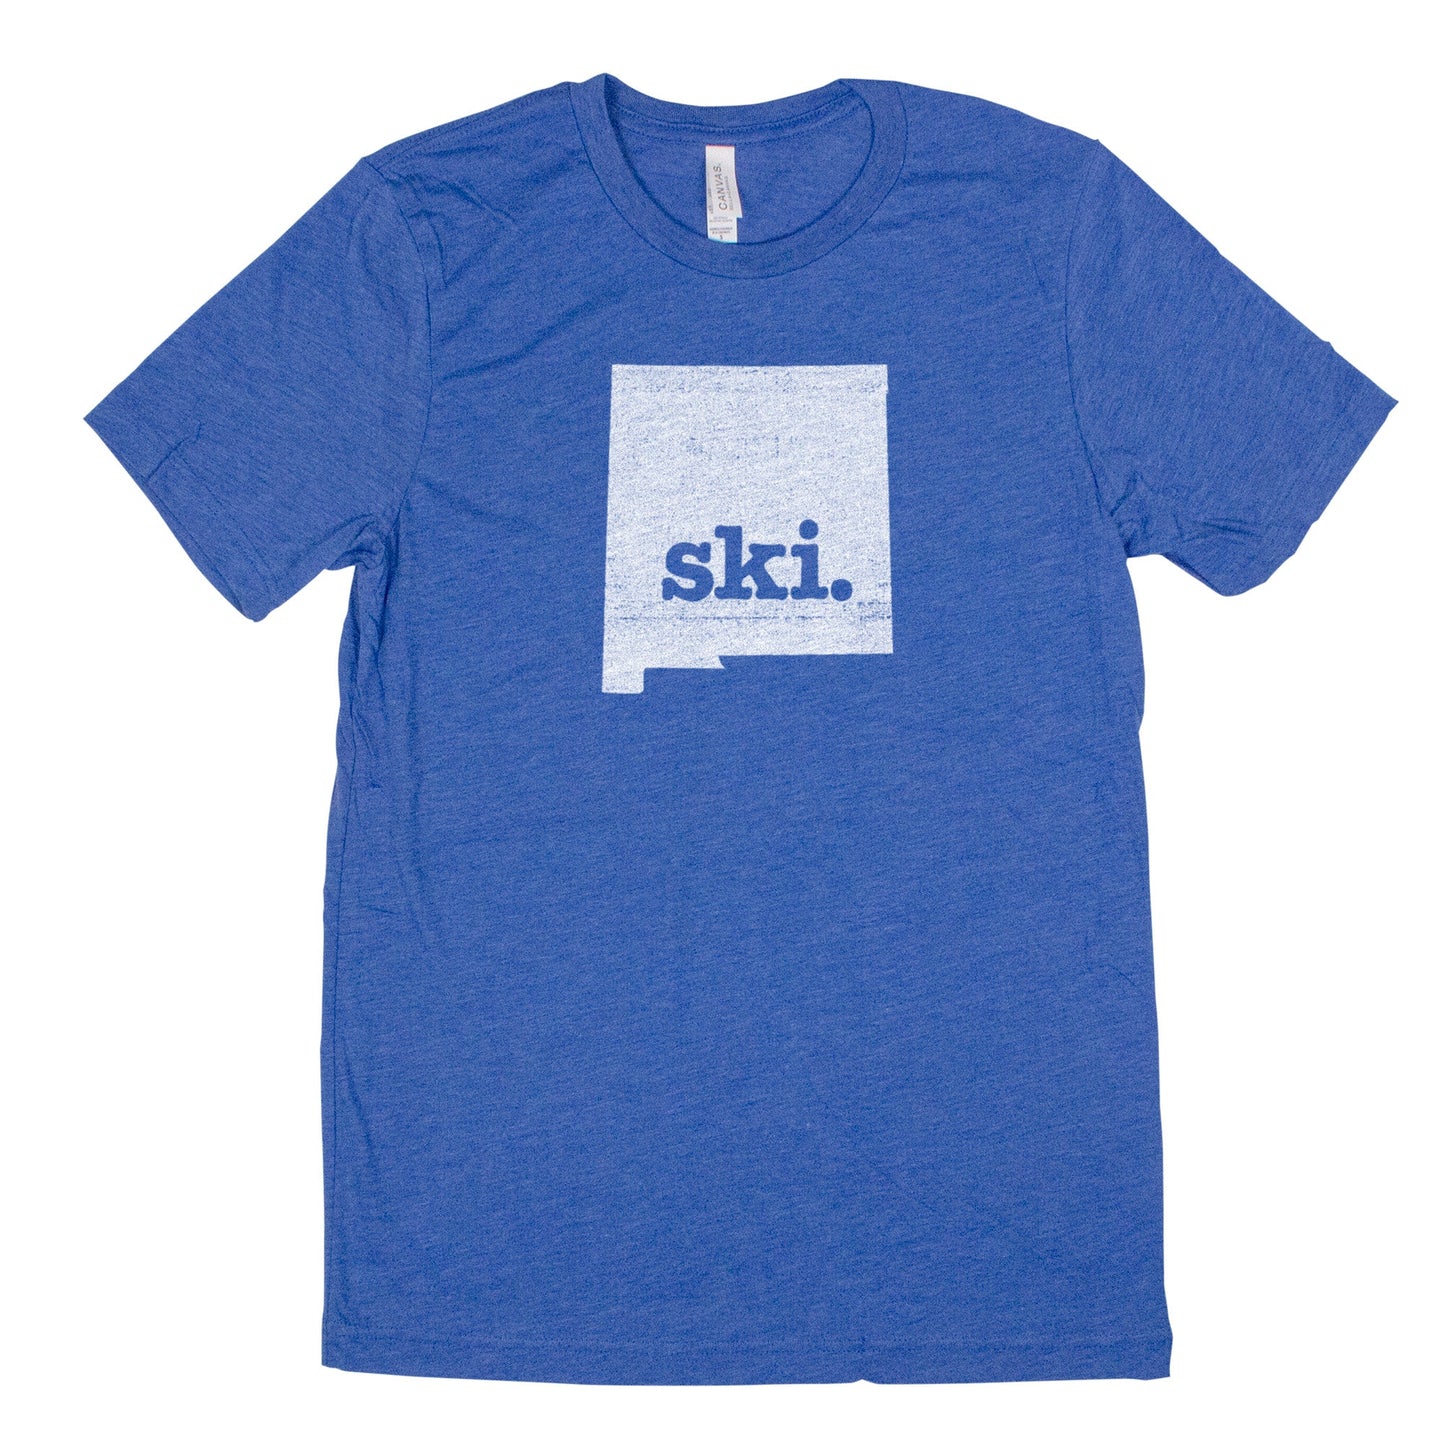 ski. Men's Unisex T-Shirt - New Mexico